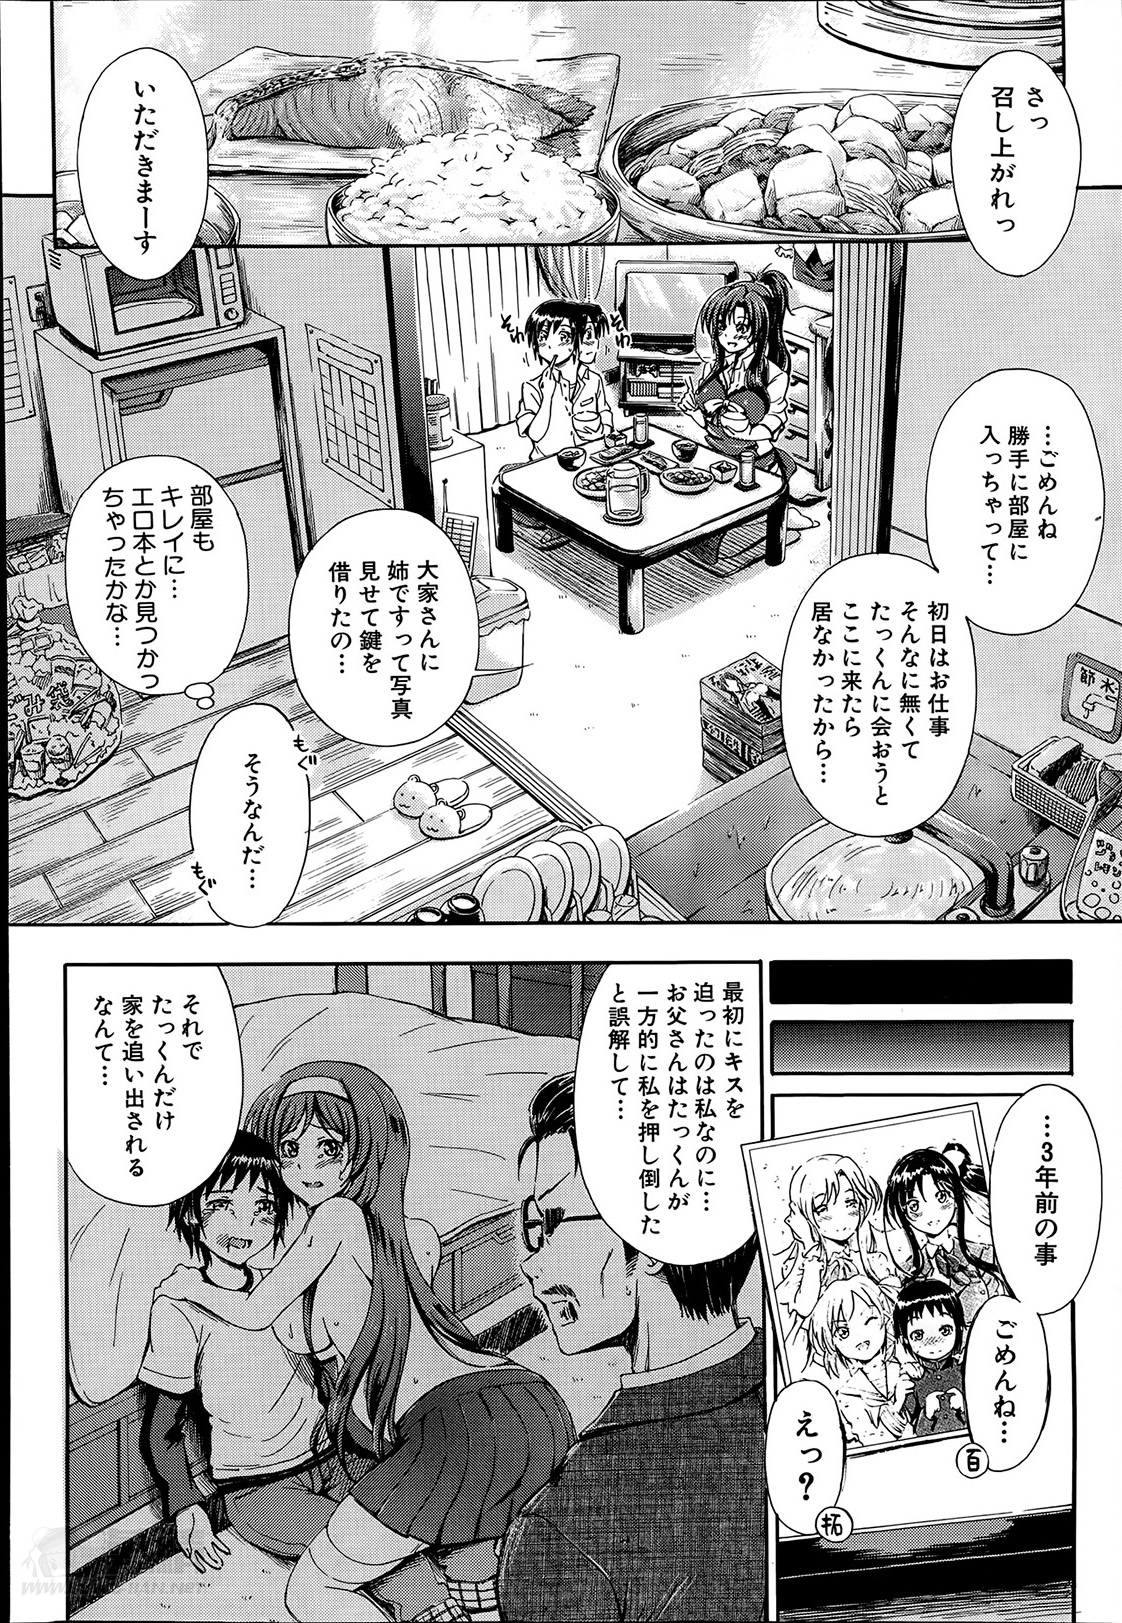 [Maekawa Hayato] SSS Ch.1-3 page 8 full